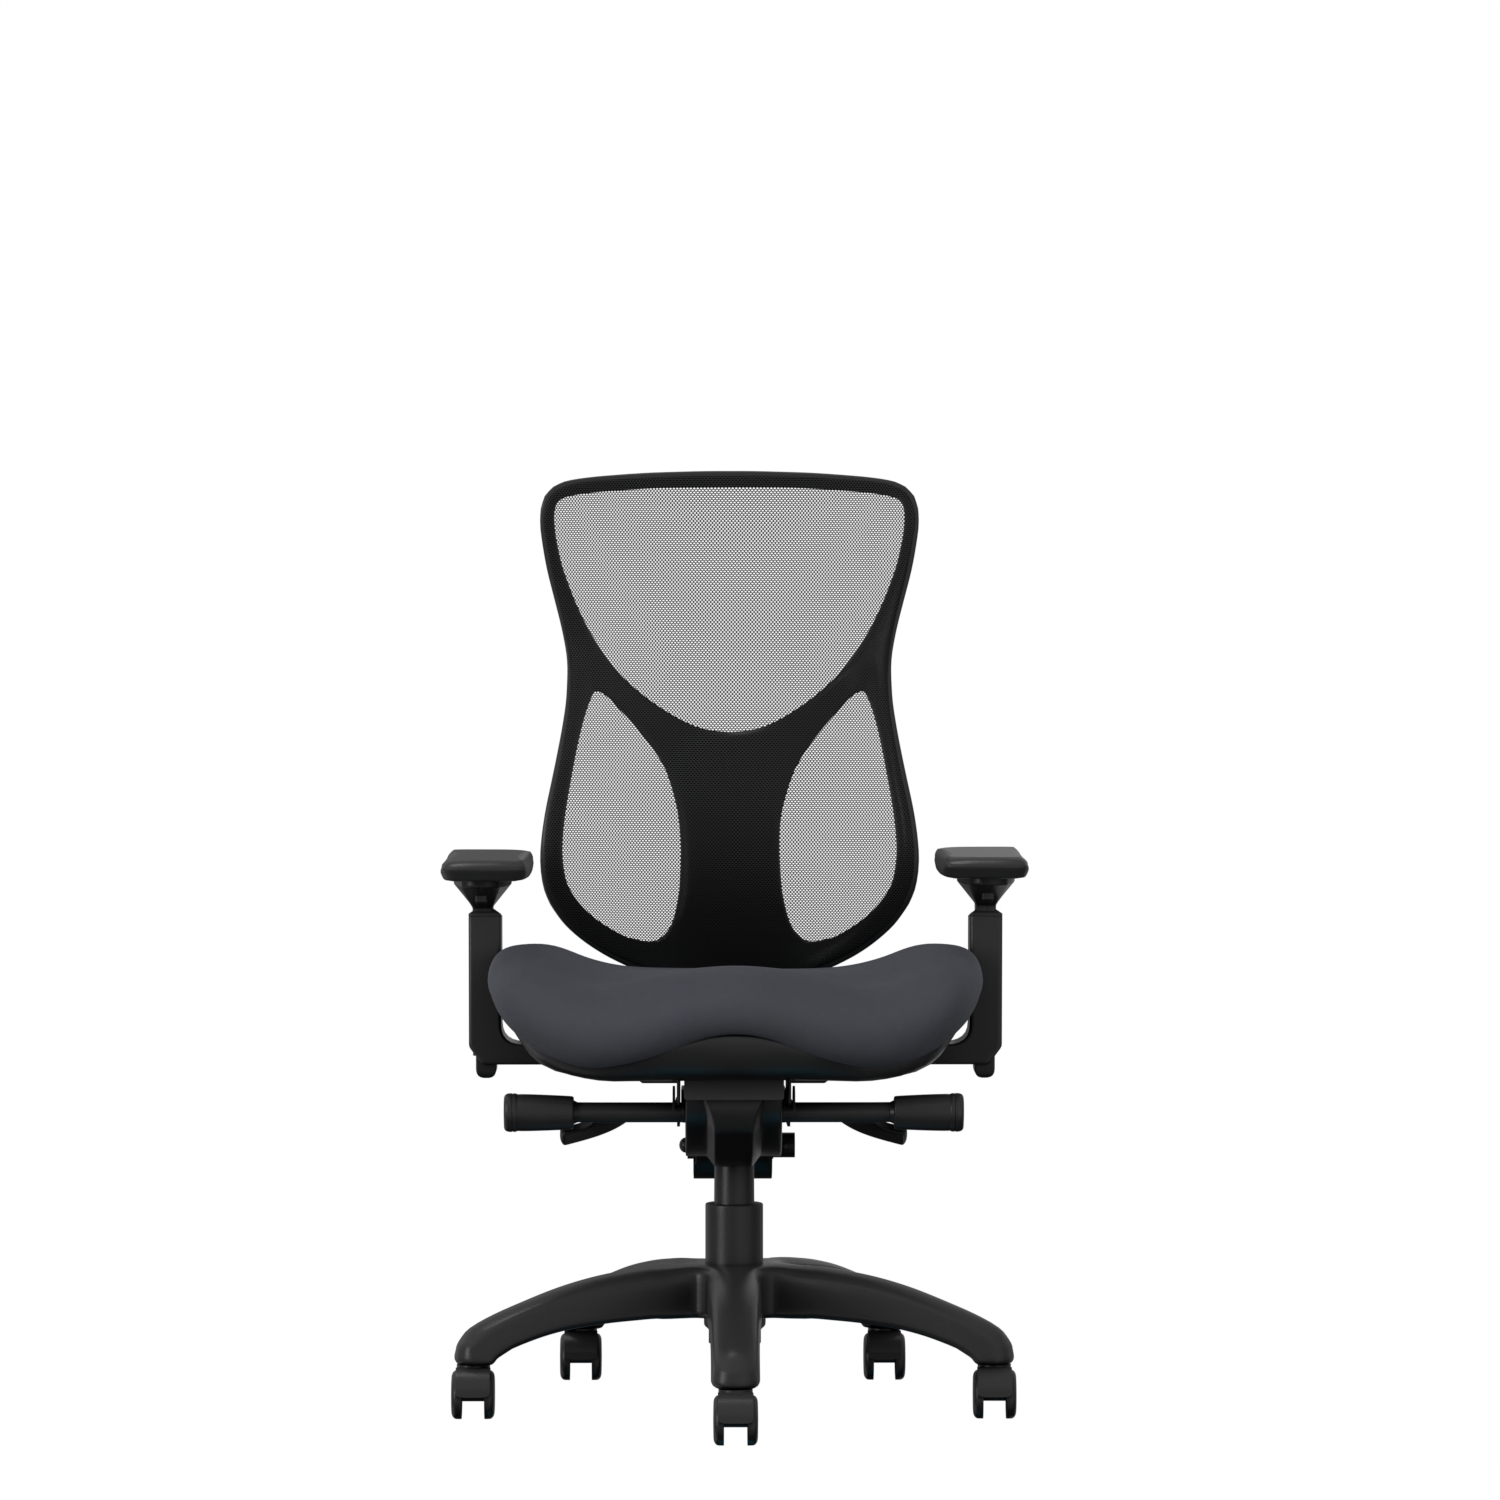 The Eagle Chair – Premium Mesh Back Chair